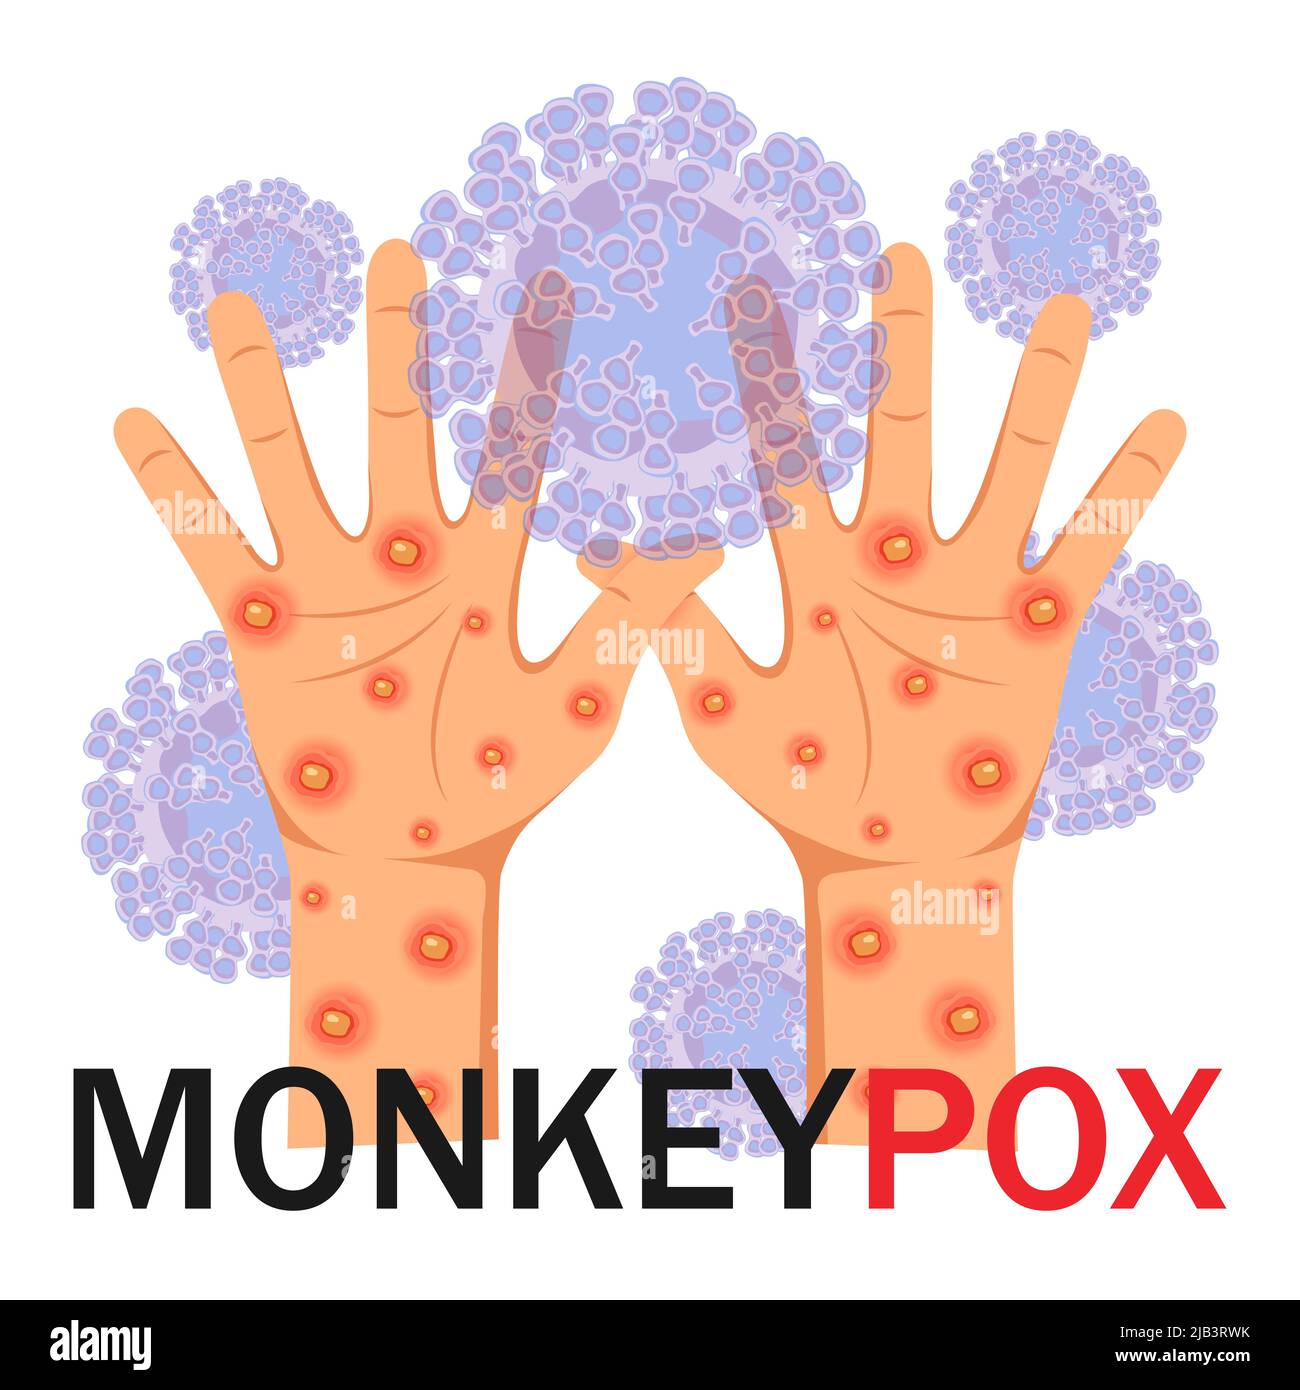 Monkeypox-Virus. Menschliche Hände mit Ausschlag auf mikrobiologischen Hintergrund mit Text. Monkeypox-Konzept. Vektorgrafik. Stock Vektor